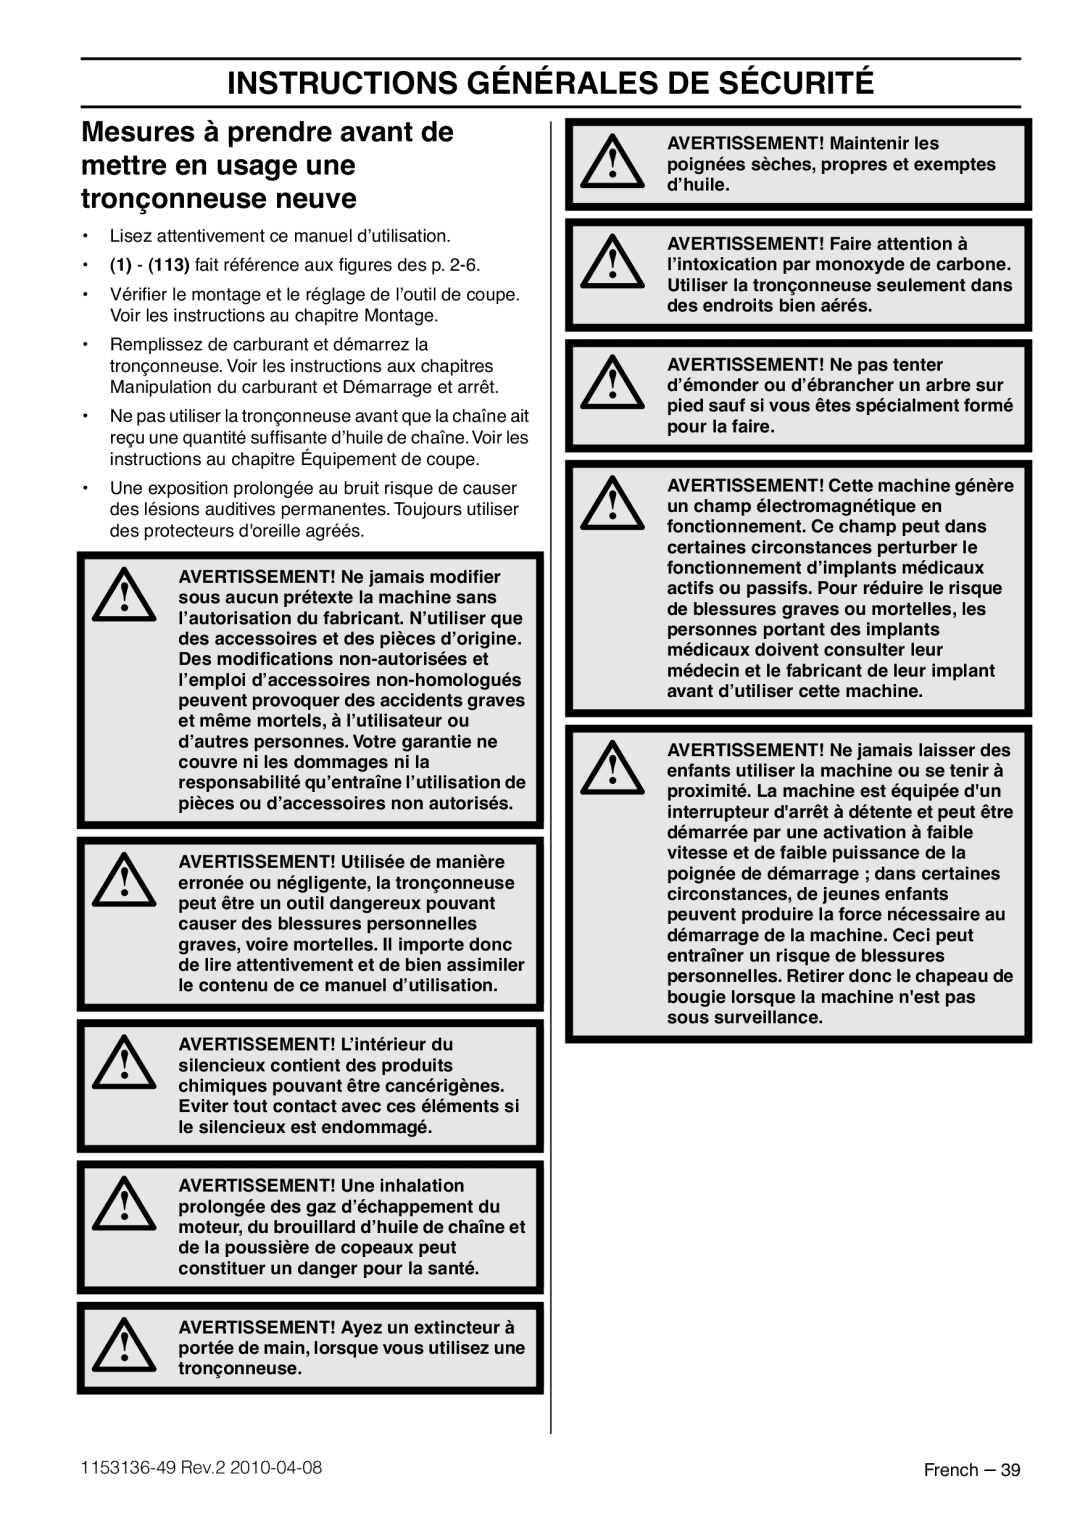 Husqvarna 1153136-49 Instructions Générales De Sécurité, Mesures à prendre avant de mettre en usage une tronçonneuse neuve 